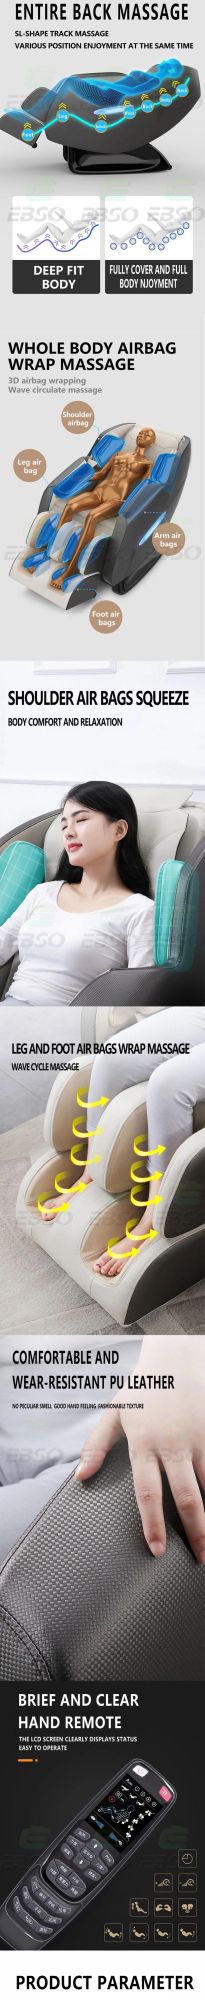 Zero Gravity 3D Massage Chair for Body Novel Massager Massage SL Shape Chair